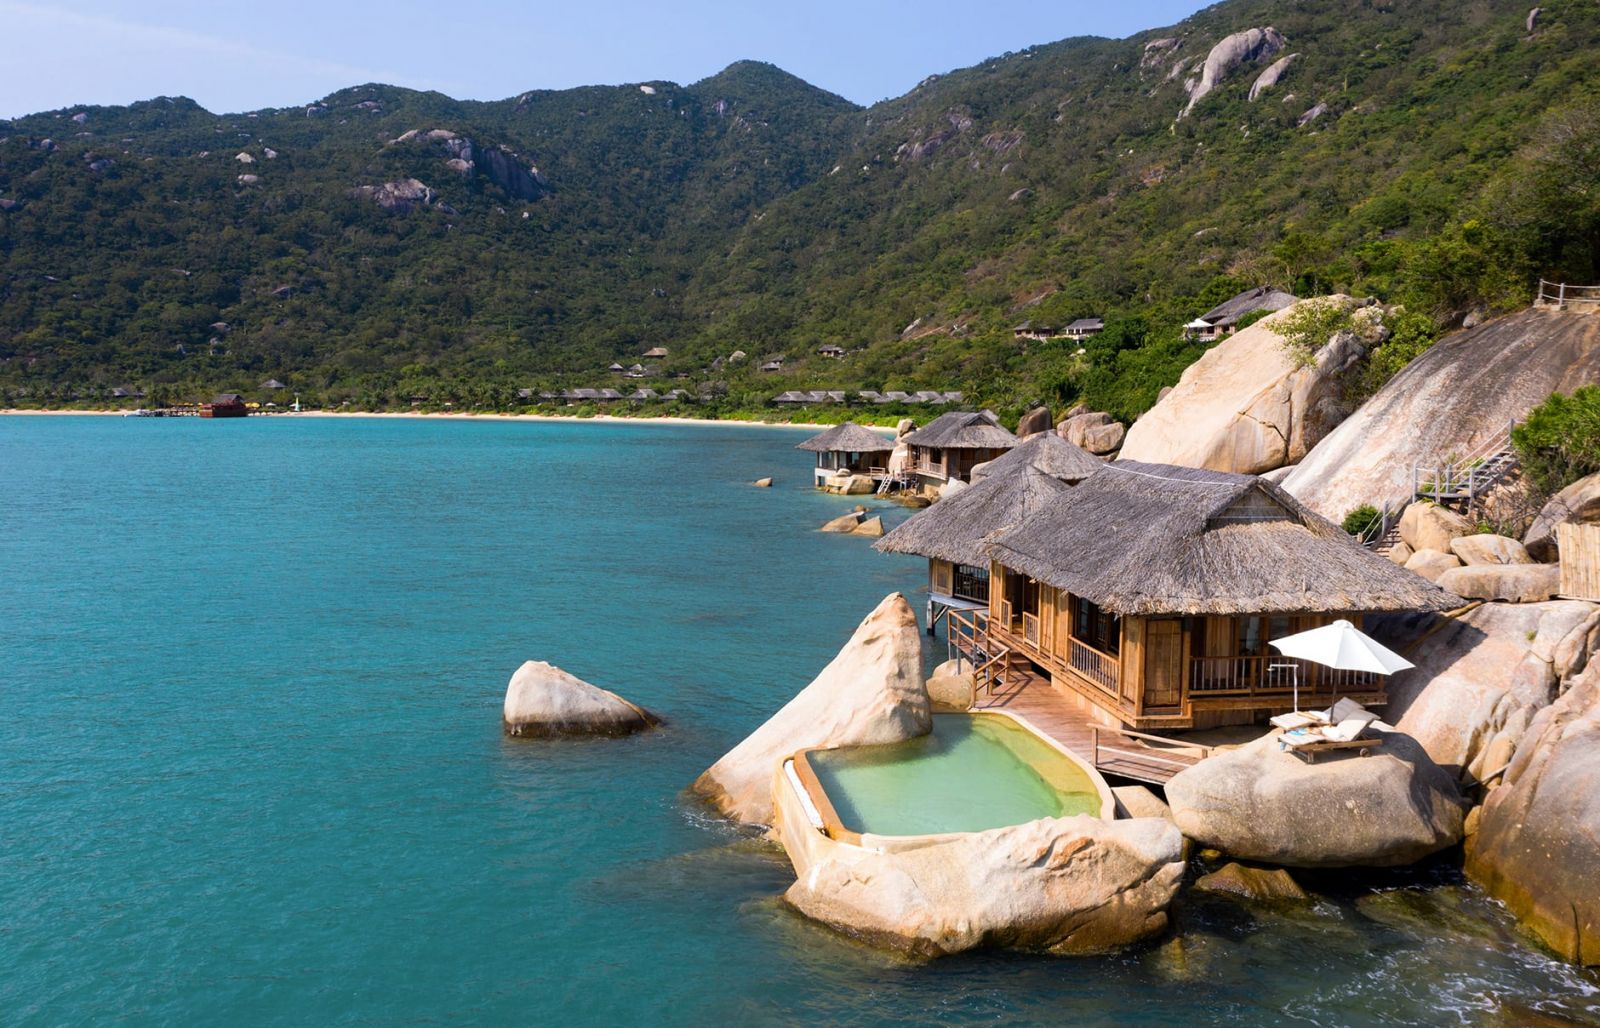 Six Senses Нинь Ван Залив был выбран как один из ведущих экологических чистых эко-курортов мира